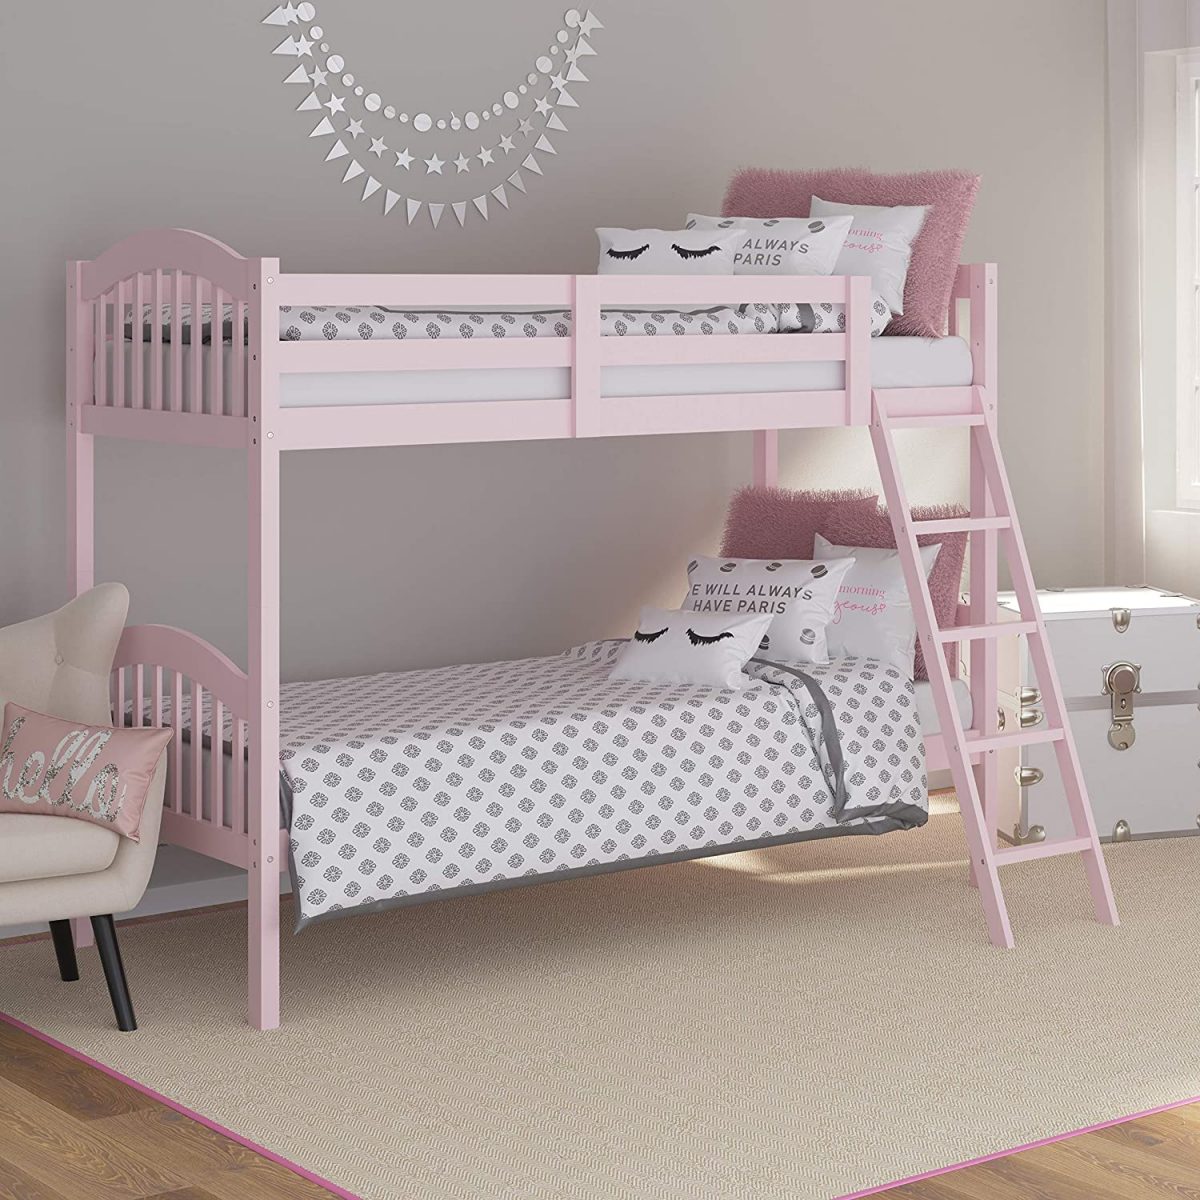 Mẫu phòng ngủ màu hồng cute với mẫu giường tầng thiết kế đơn giản, tiện lợi cho các bé